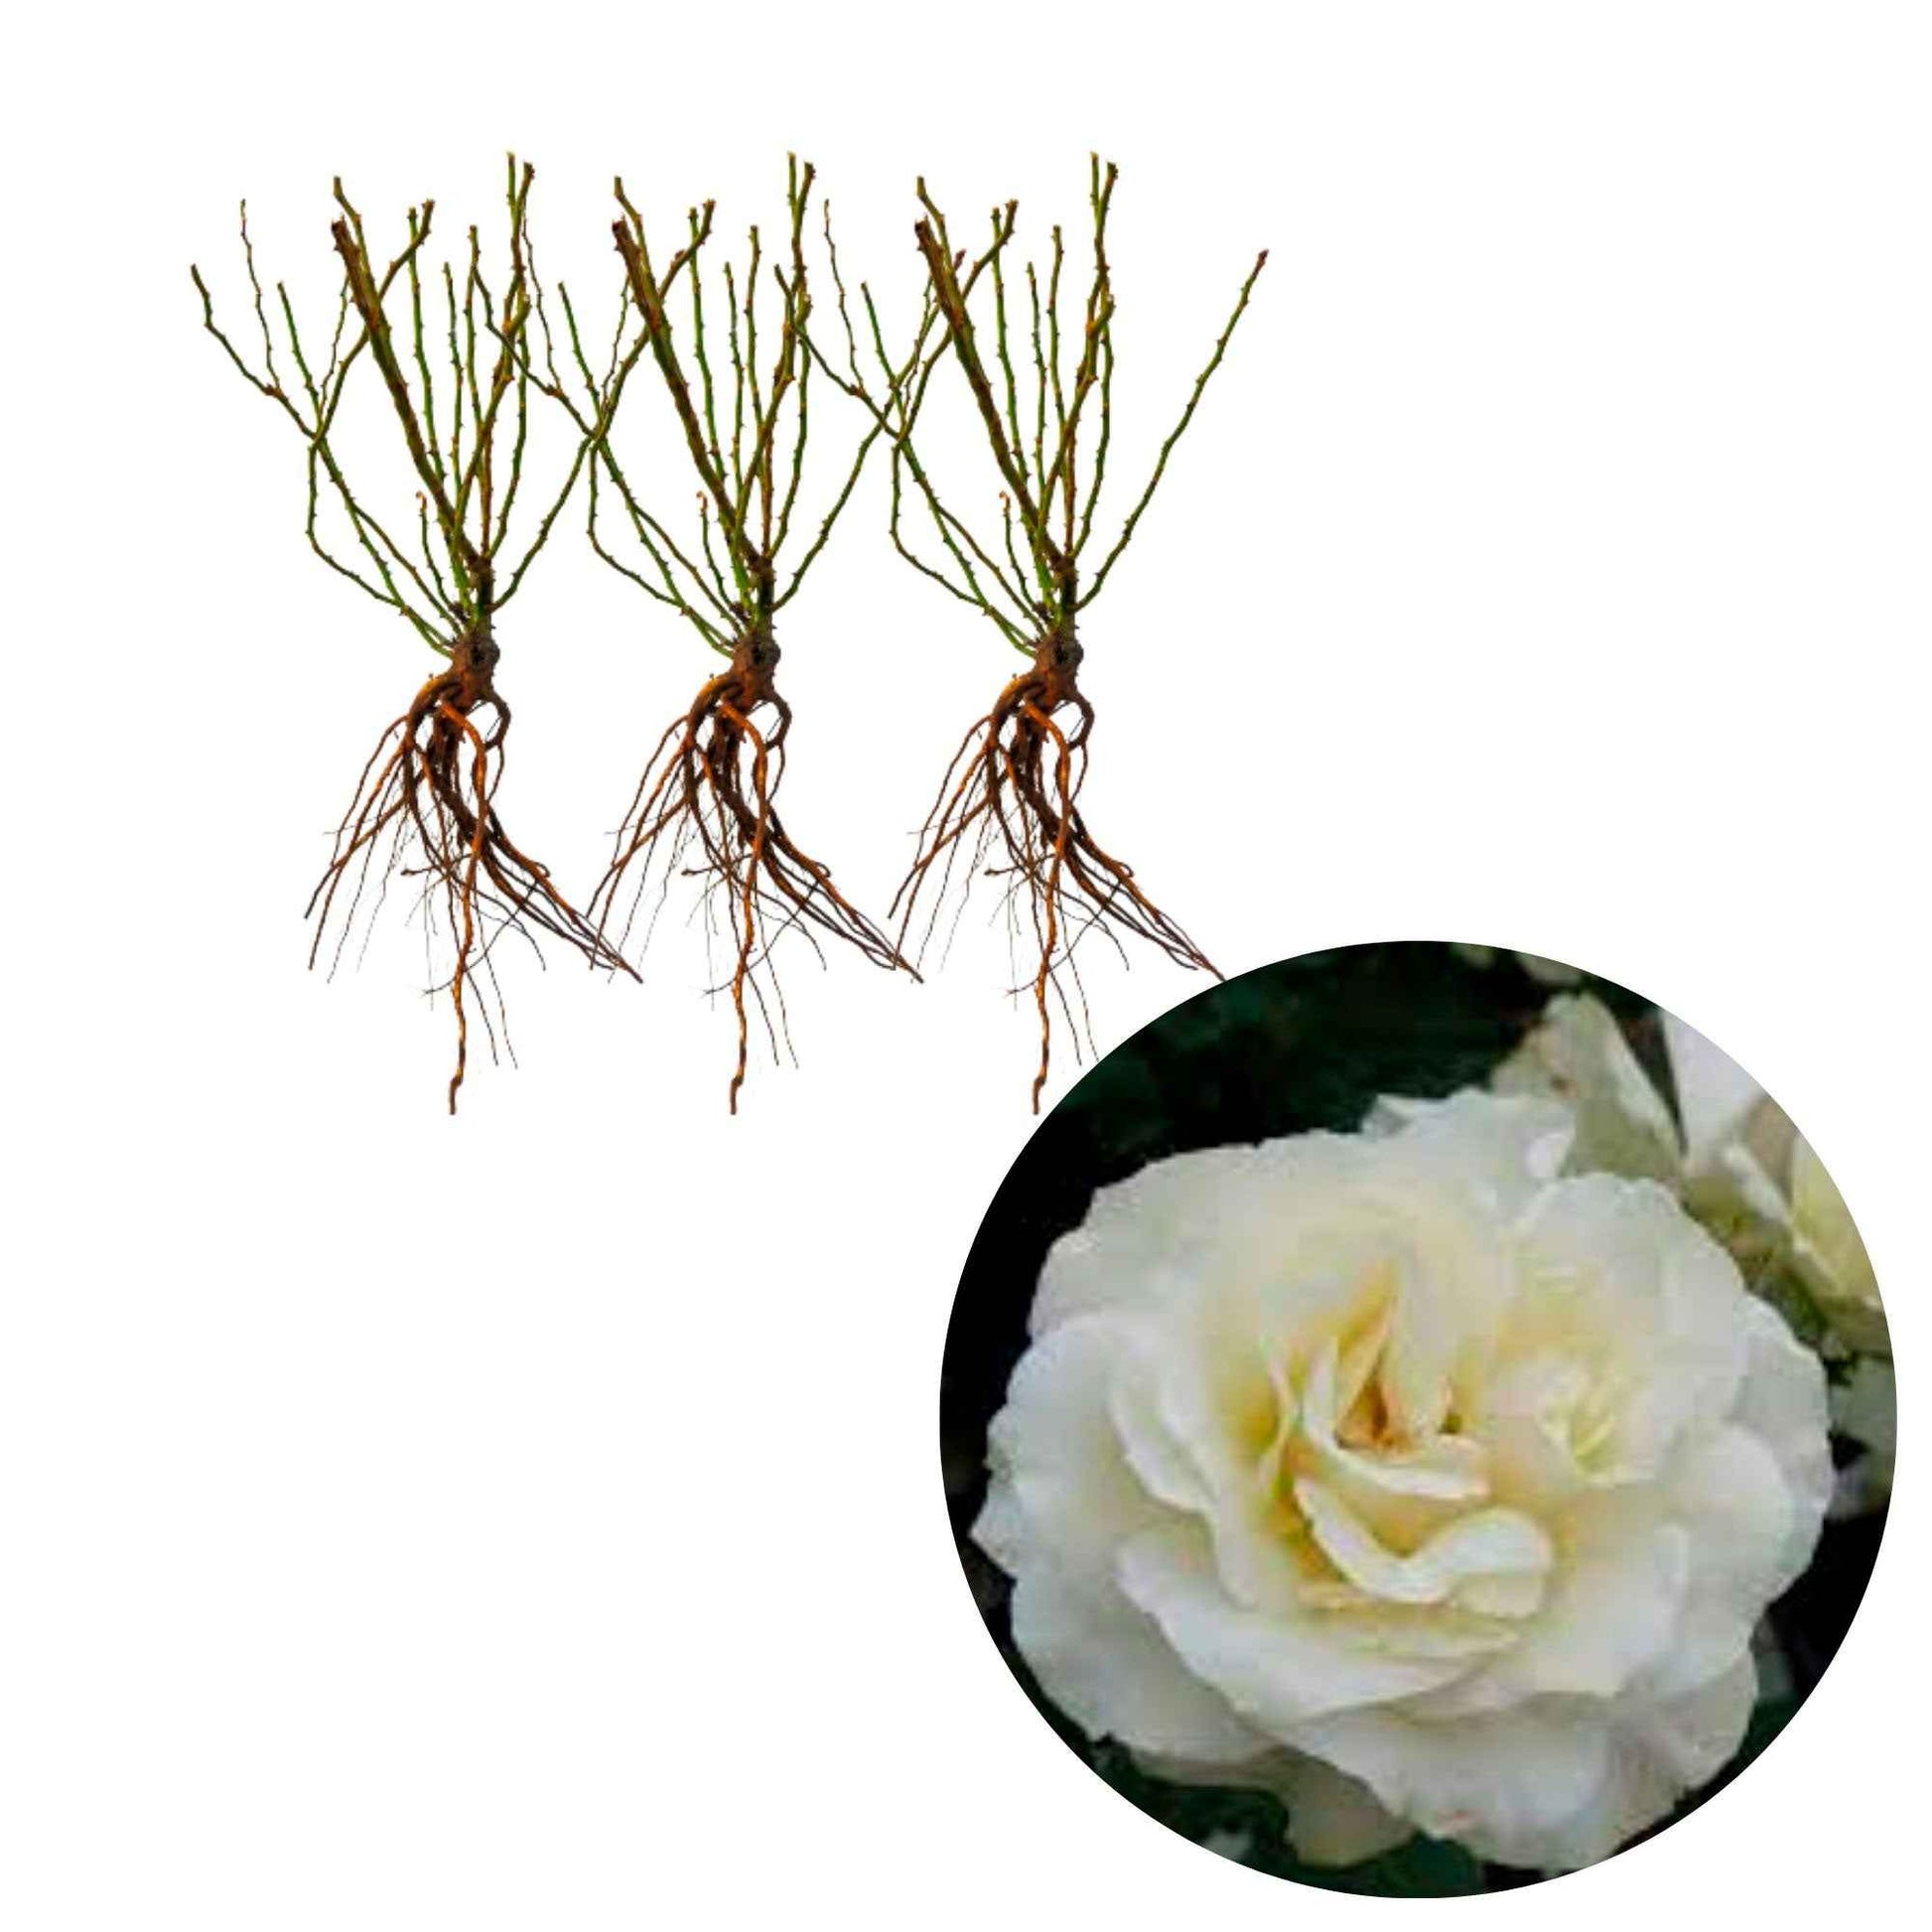 3x Rozen 'White Meilove'® Wit  - Bare rooted - Winterhard - Plant eigenschap